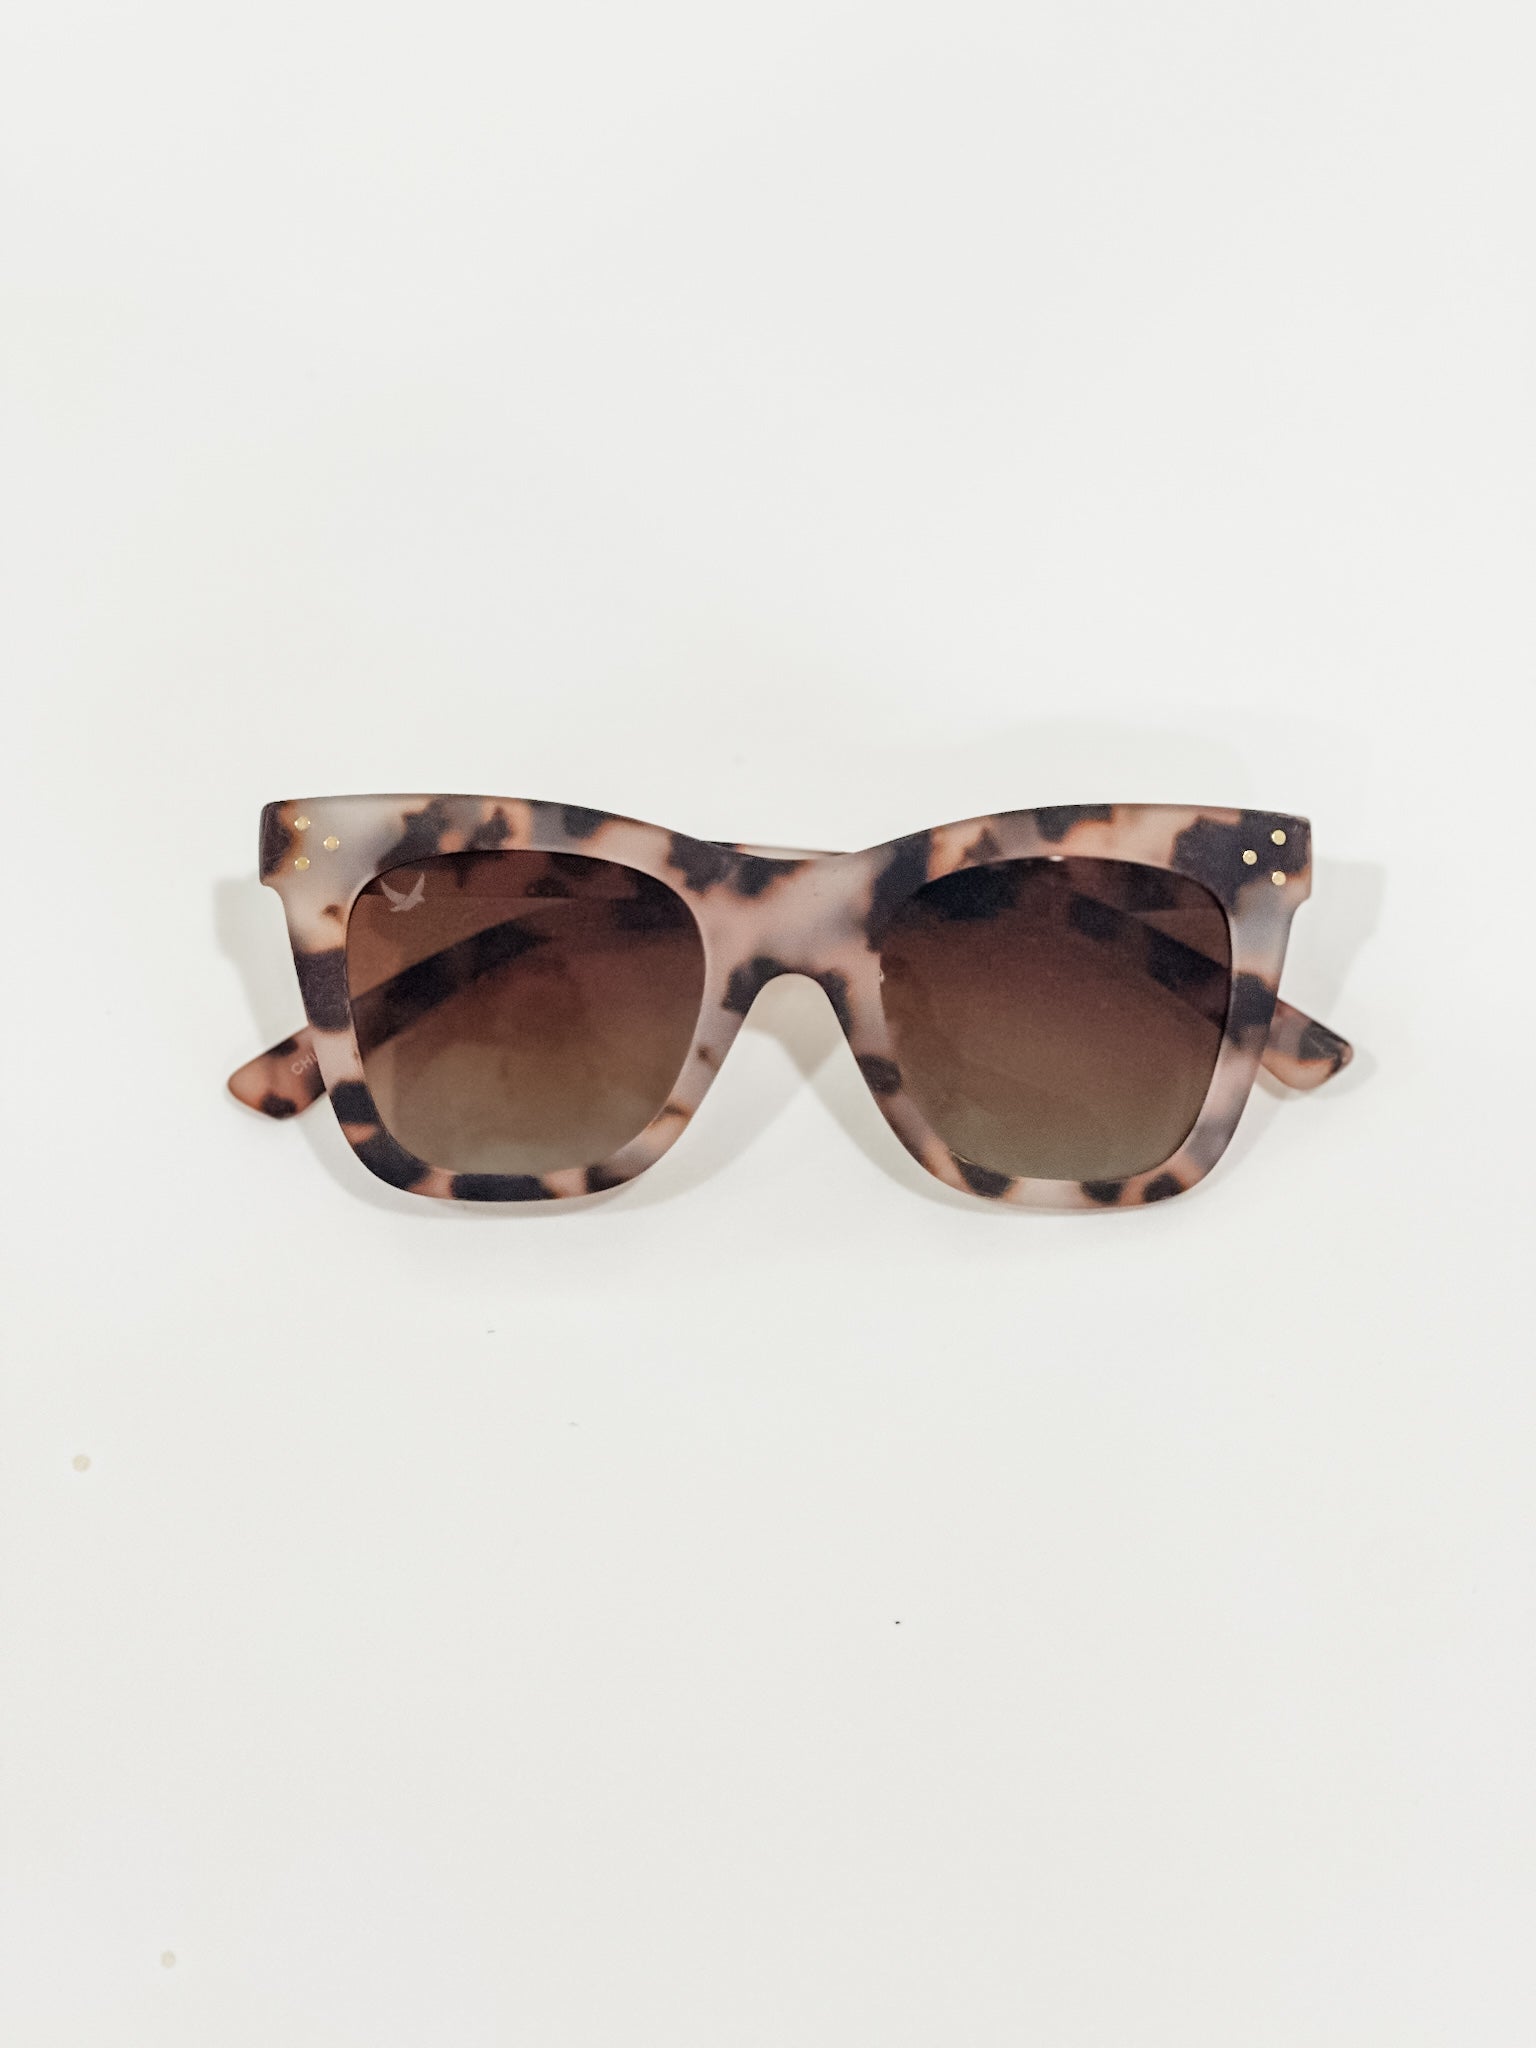 Byrdsi Cover Girl Glasses - Black & Cream Tortoise Shell